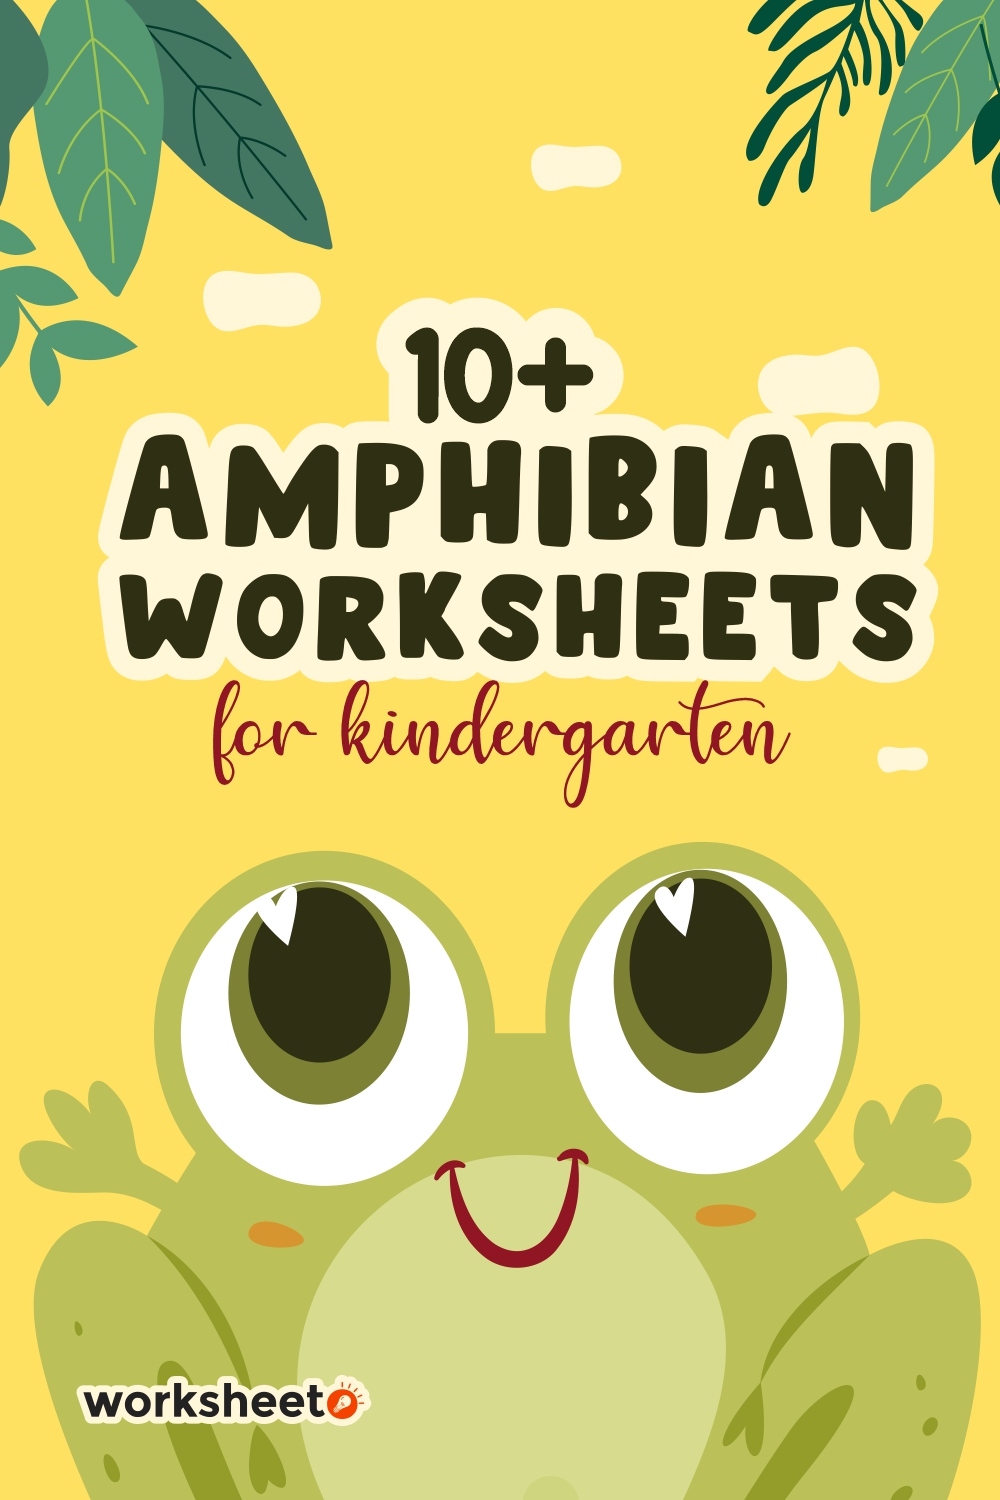 9 Images of Amphibian Worksheets For Kindergarten